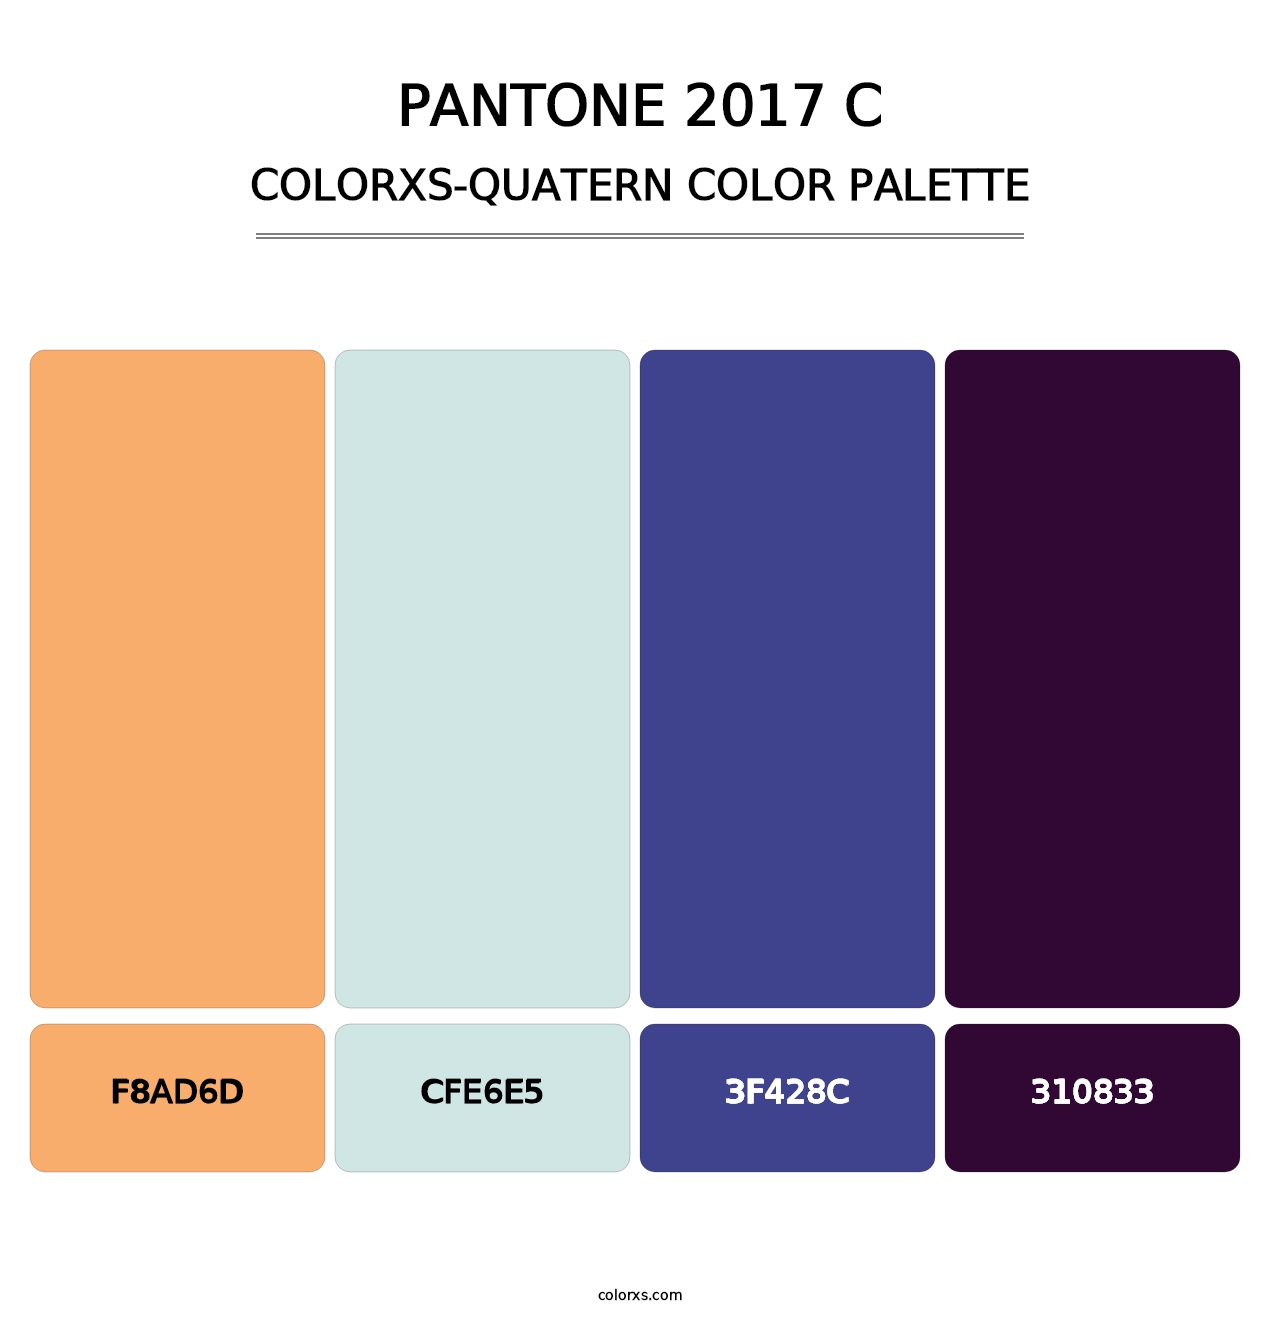 PANTONE 2017 C - Colorxs Quatern Palette